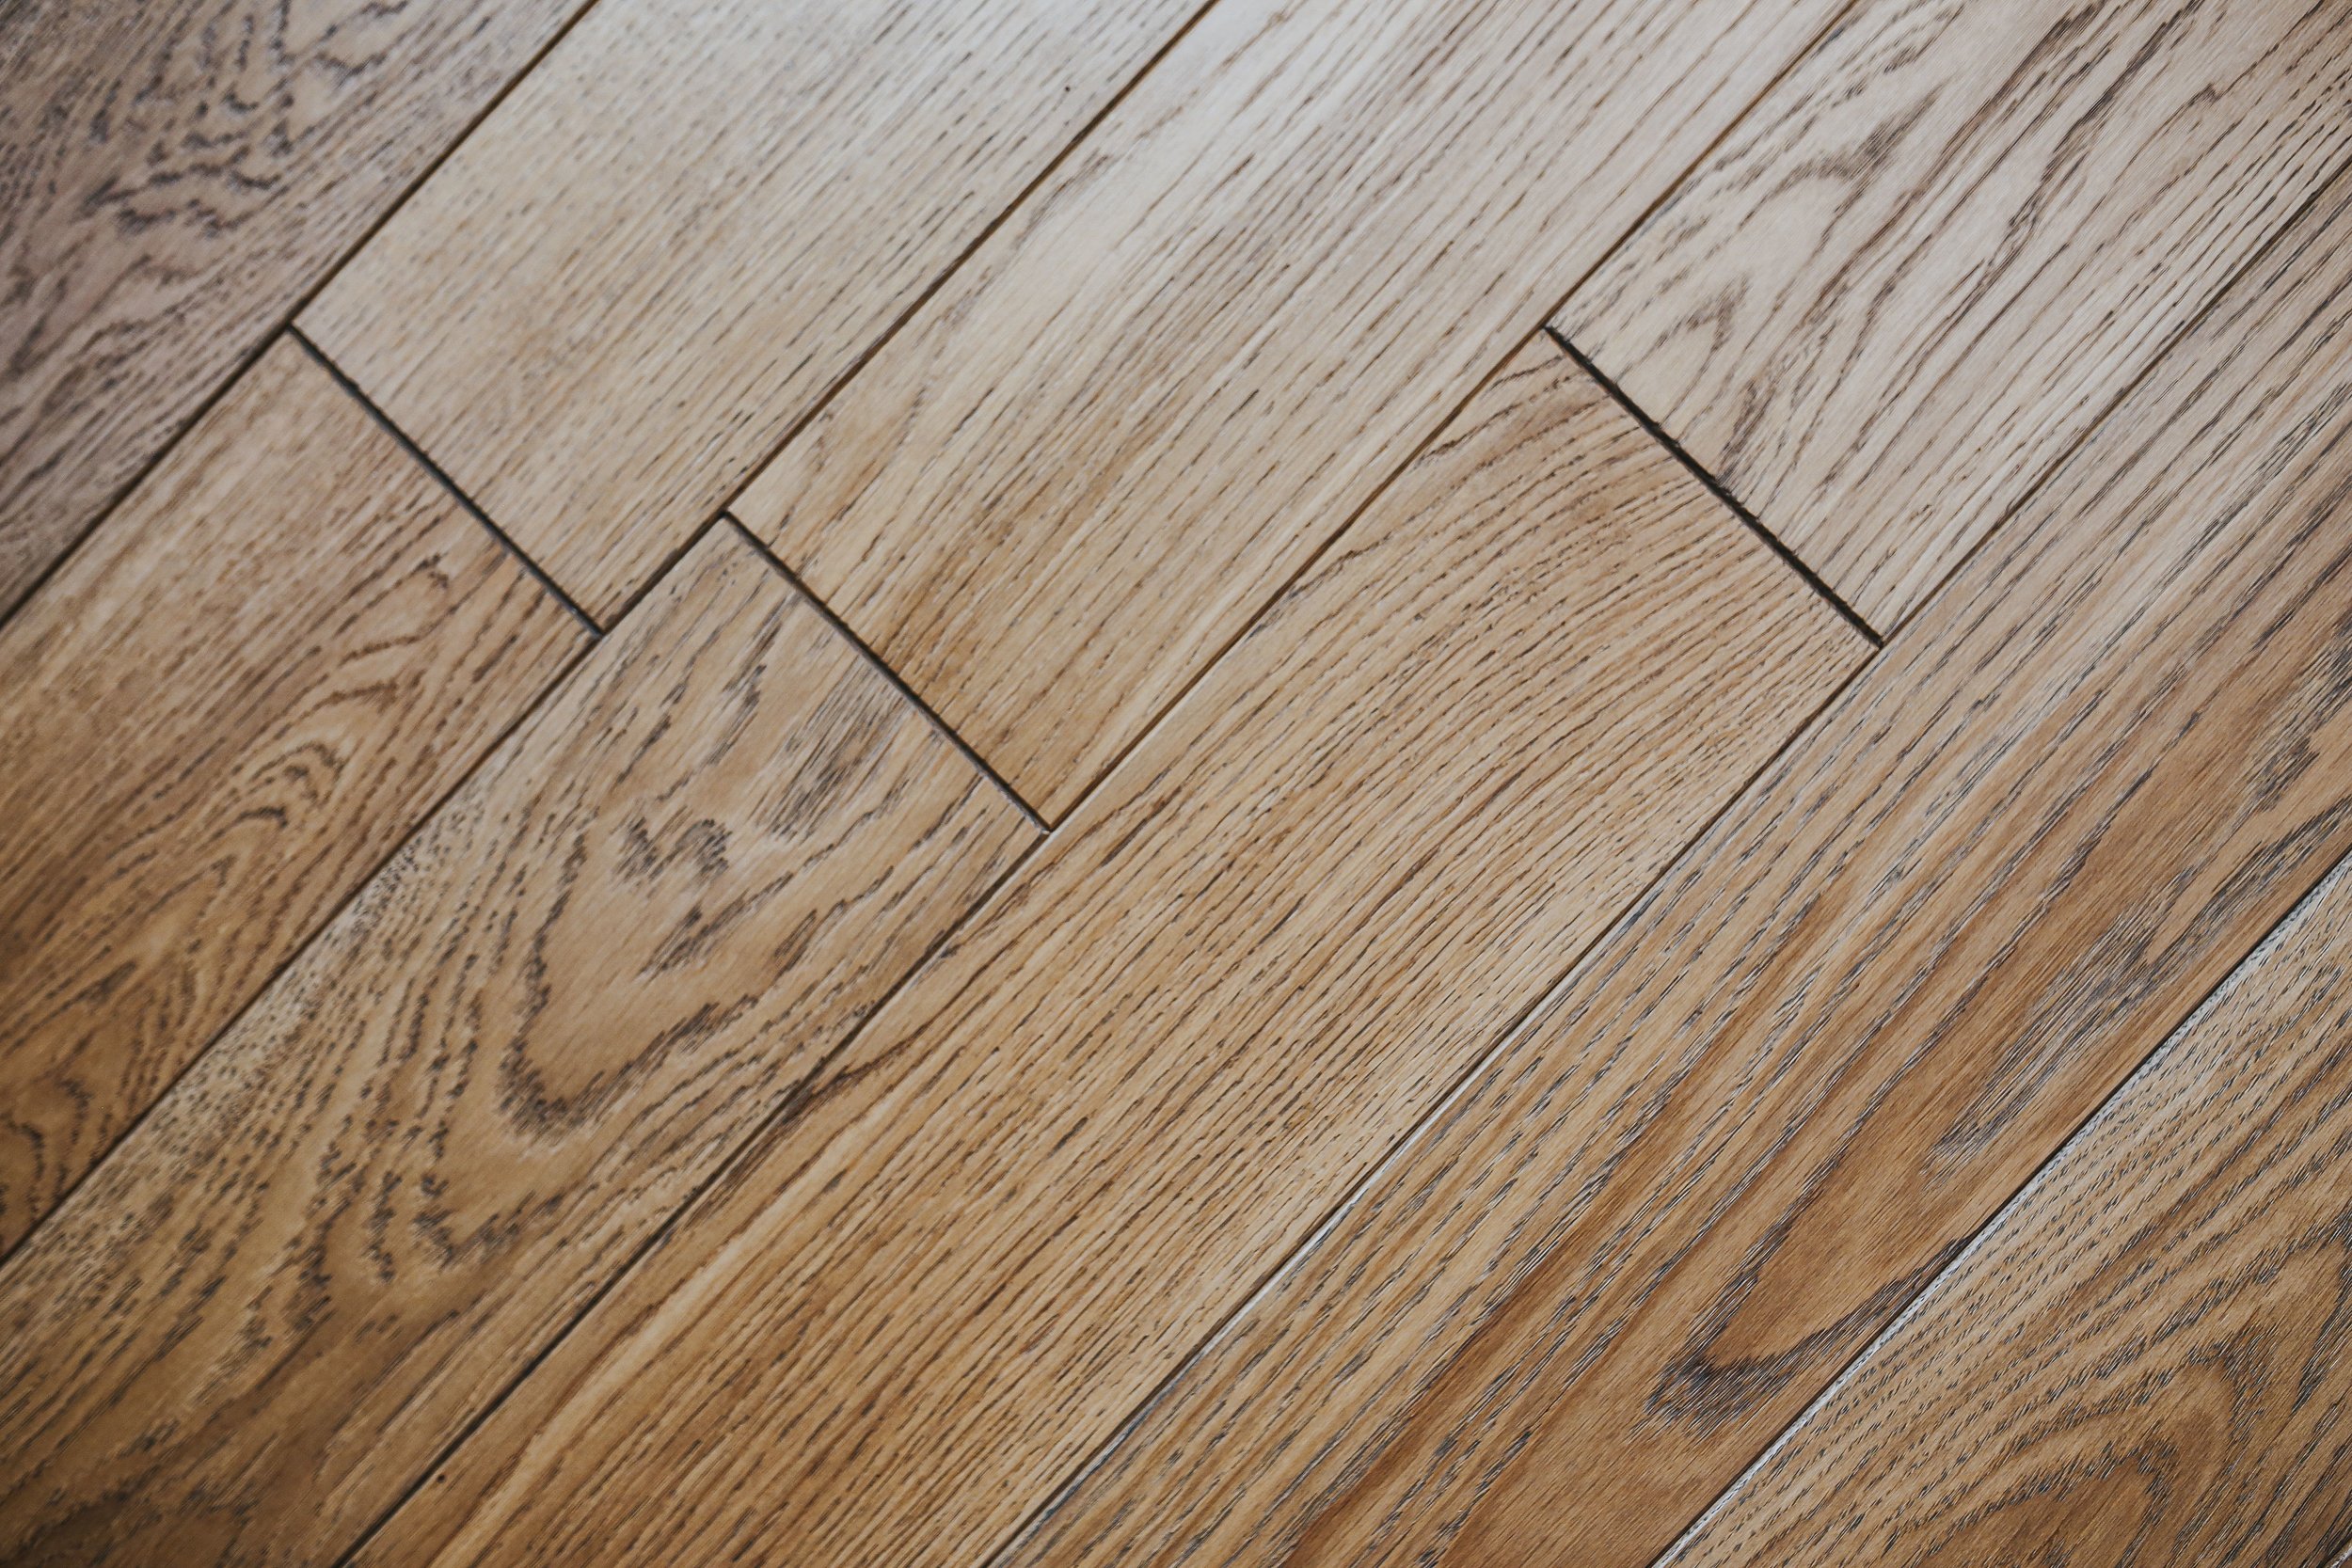 Hardwood Floors, Humidity For Hardwood Floors